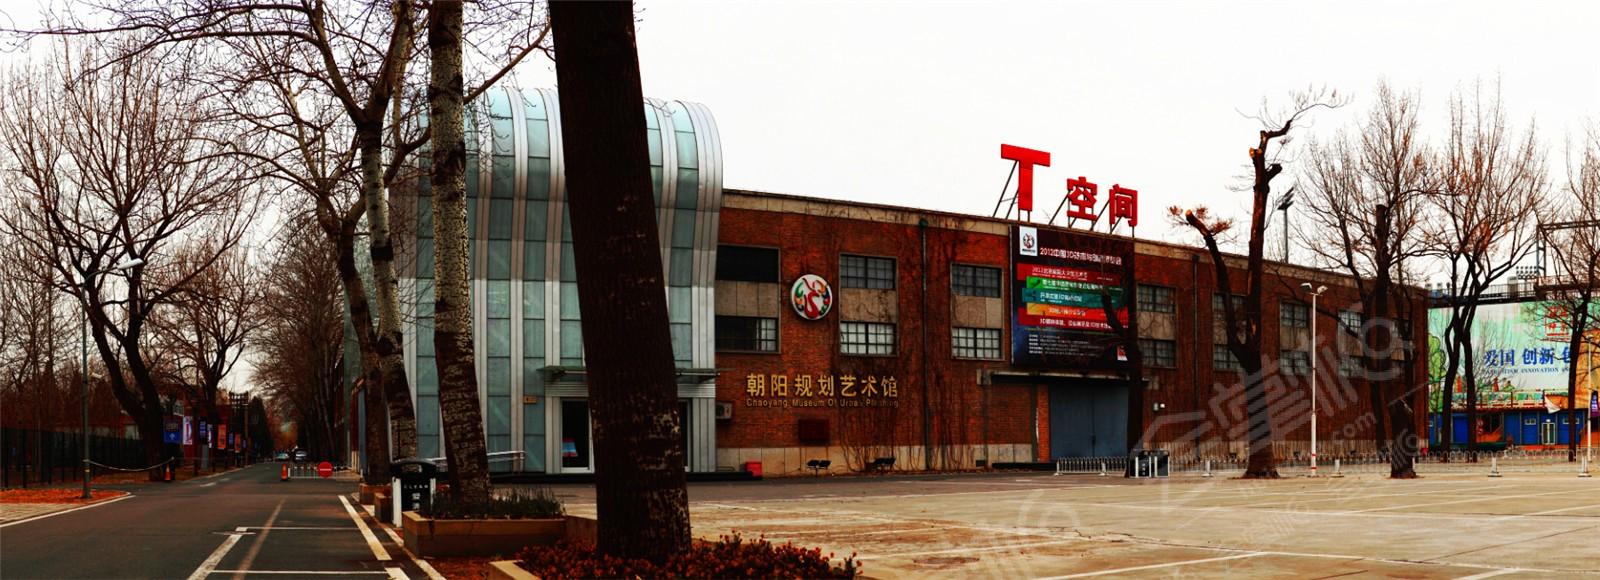 T-Space北京规划艺术馆